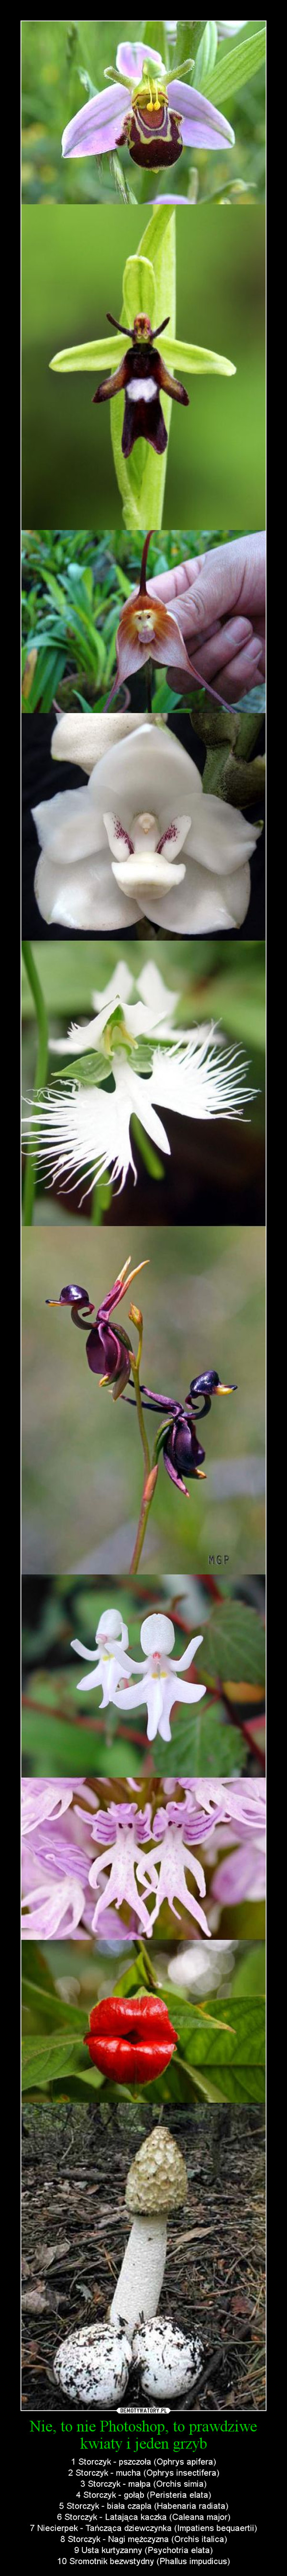 Nie, to nie Photoshop, to prawdziwe kwiaty i jeden grzyb – 1 Storczyk - pszczoła (Ophrys apifera)\n2 Storczyk - mucha (Ophrys insectifera)\n3 Storczyk - małpa (Orchis simia)\n4 Storczyk - gołąb (Peristeria elata)\n5 Storczyk - biała czapla (Habenaria radiata)\n6 Storczyk - Latająca kaczka (Caleana major)\n7 Niecierpek - Tańcząca dziewczynka (Impatiens bequaertii)\n8 Storczyk - Nagi mężczyzna (Orchis italica)\n9 Usta kurtyzanny (Psychotria elata)\n10 Sromotnik bezwstydny (Phallus impudicus) 